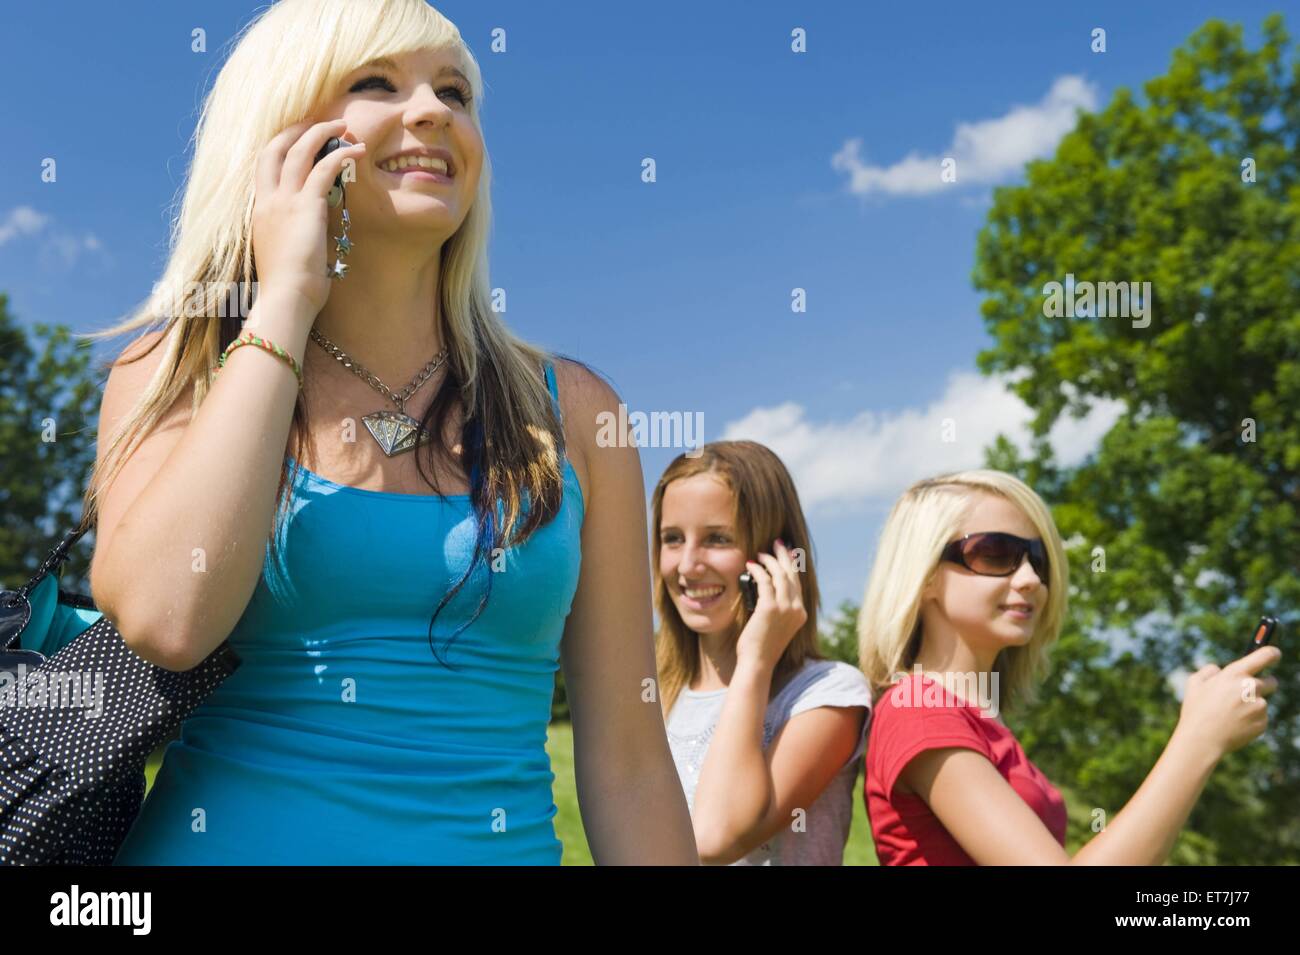 drei junge Maedchen stehen auf einer Wiese und telefonieren laechelnd mit dem Handy | three young girls standing in a meadow pho Stock Photo